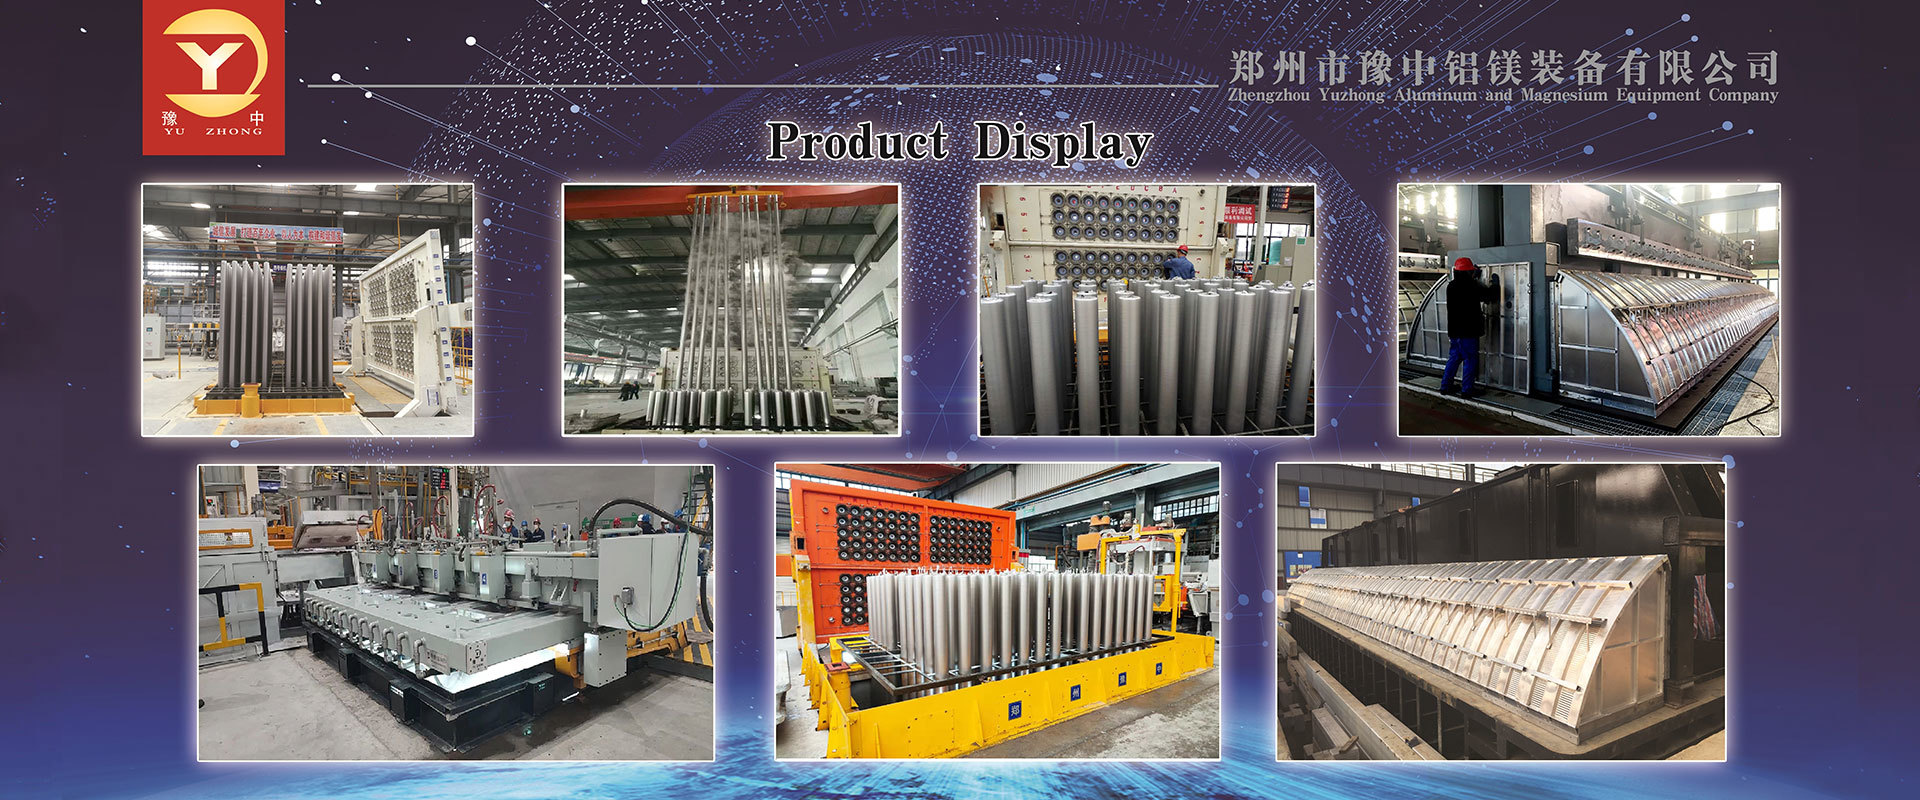 Zhengzhou Yuzhong Aluminum and Magnesium Equipment Co., Ltd